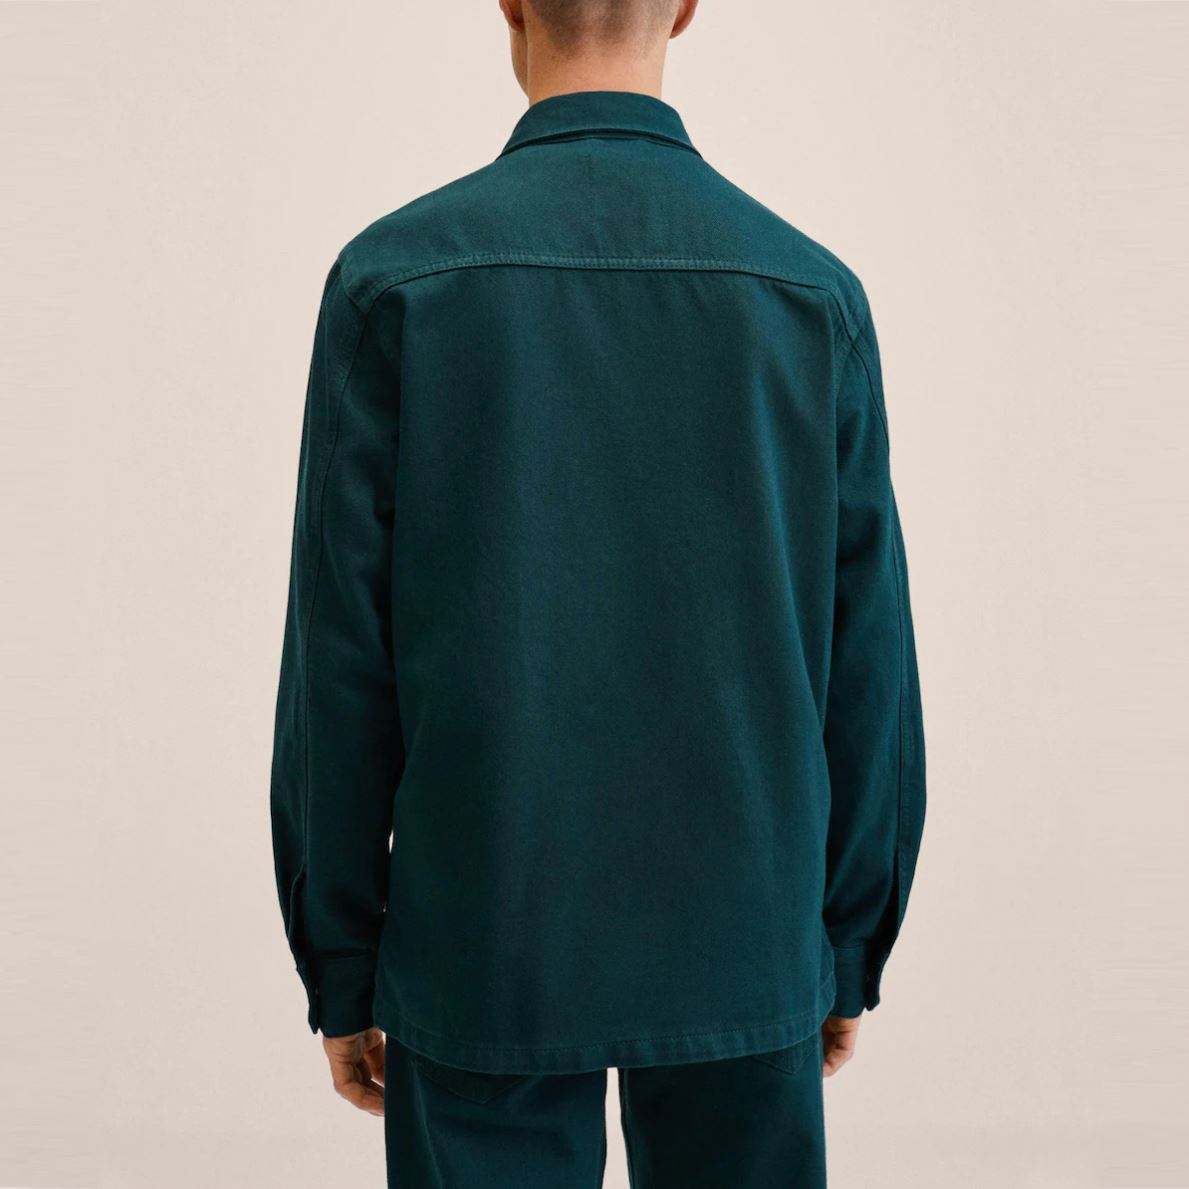 OEM Producent Højkvalitets Man Custom Logo Bomuld Langærmet Button Up denimskjorte